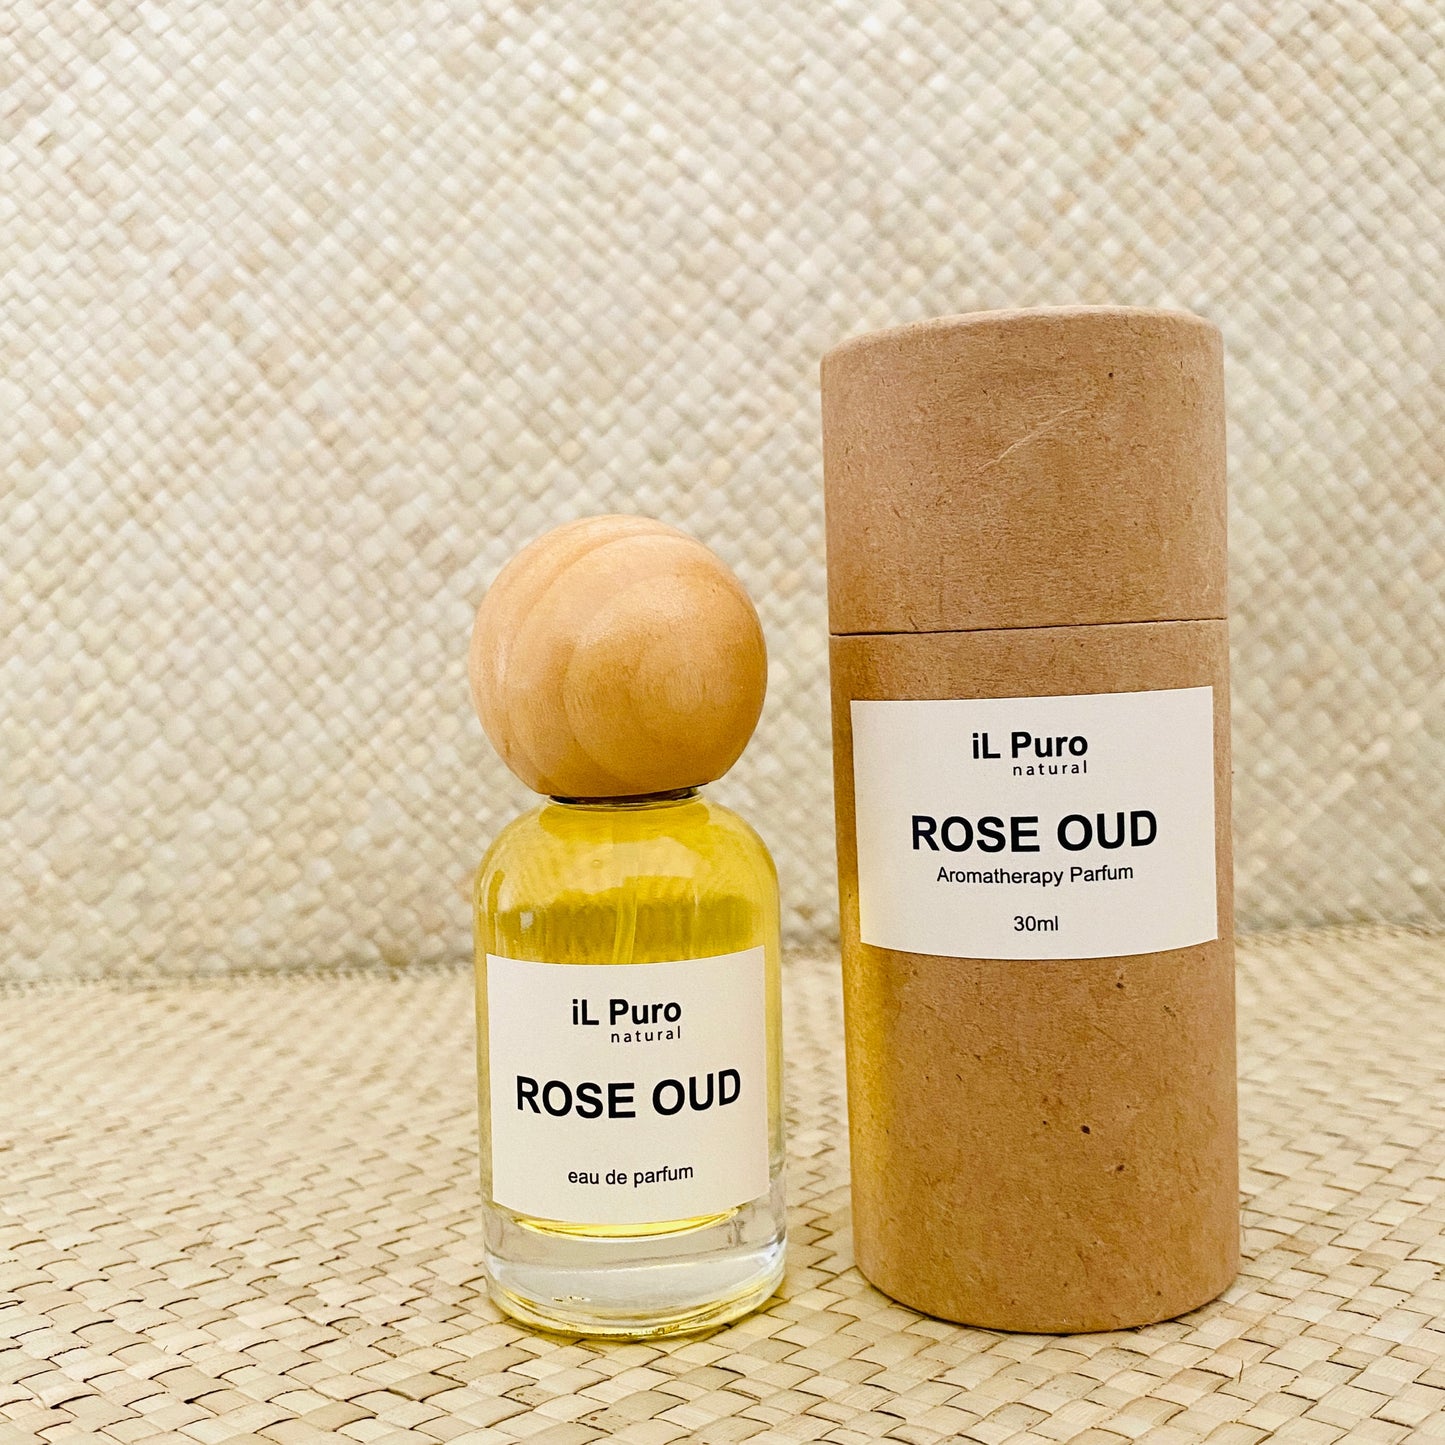 Aromatherapy Parfum 30ml